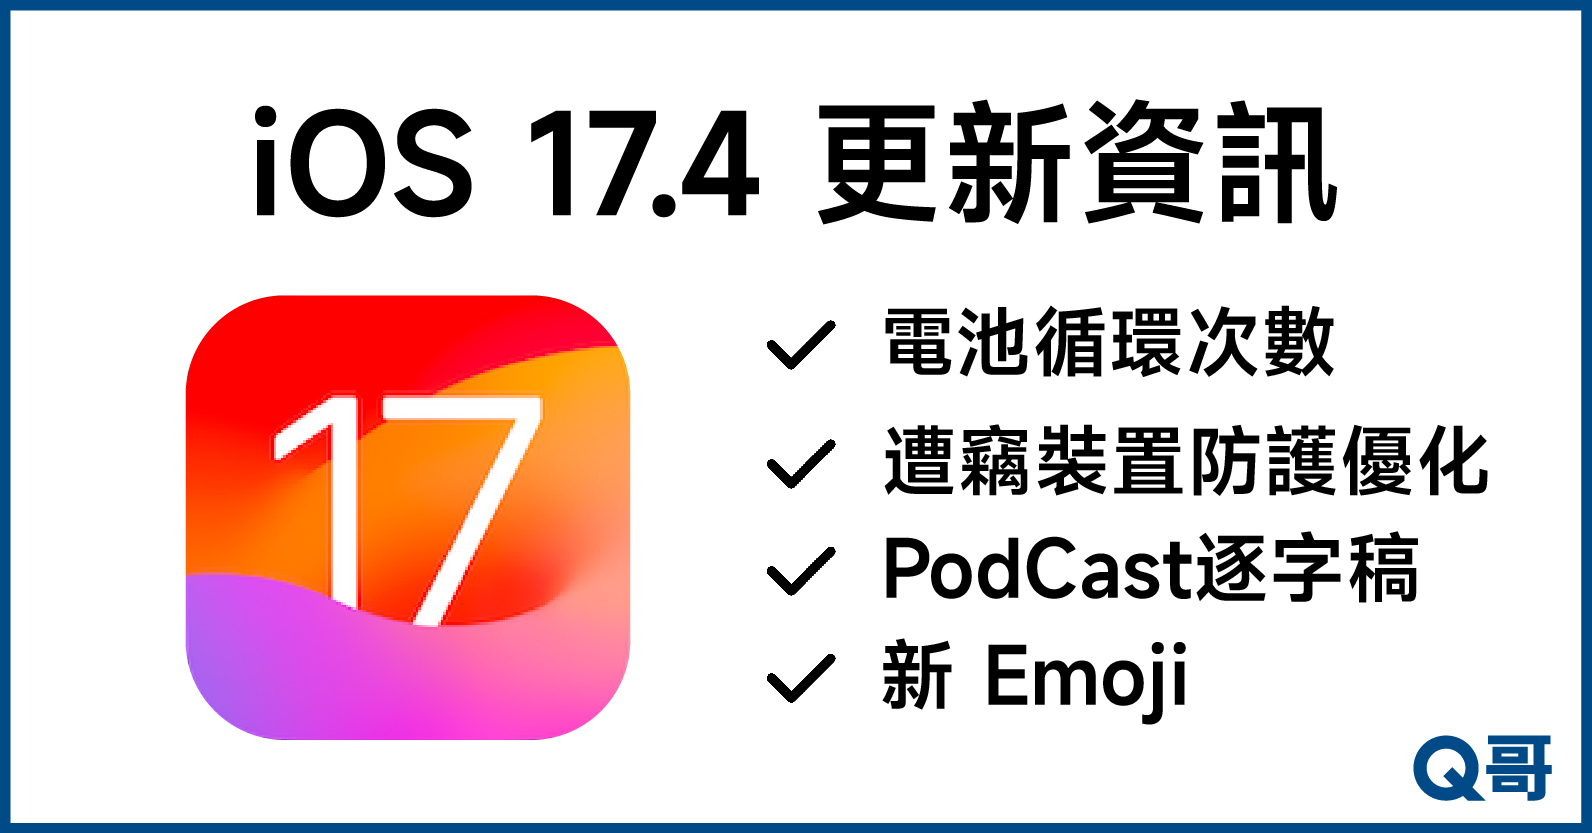 iOS 17.4更新資訊